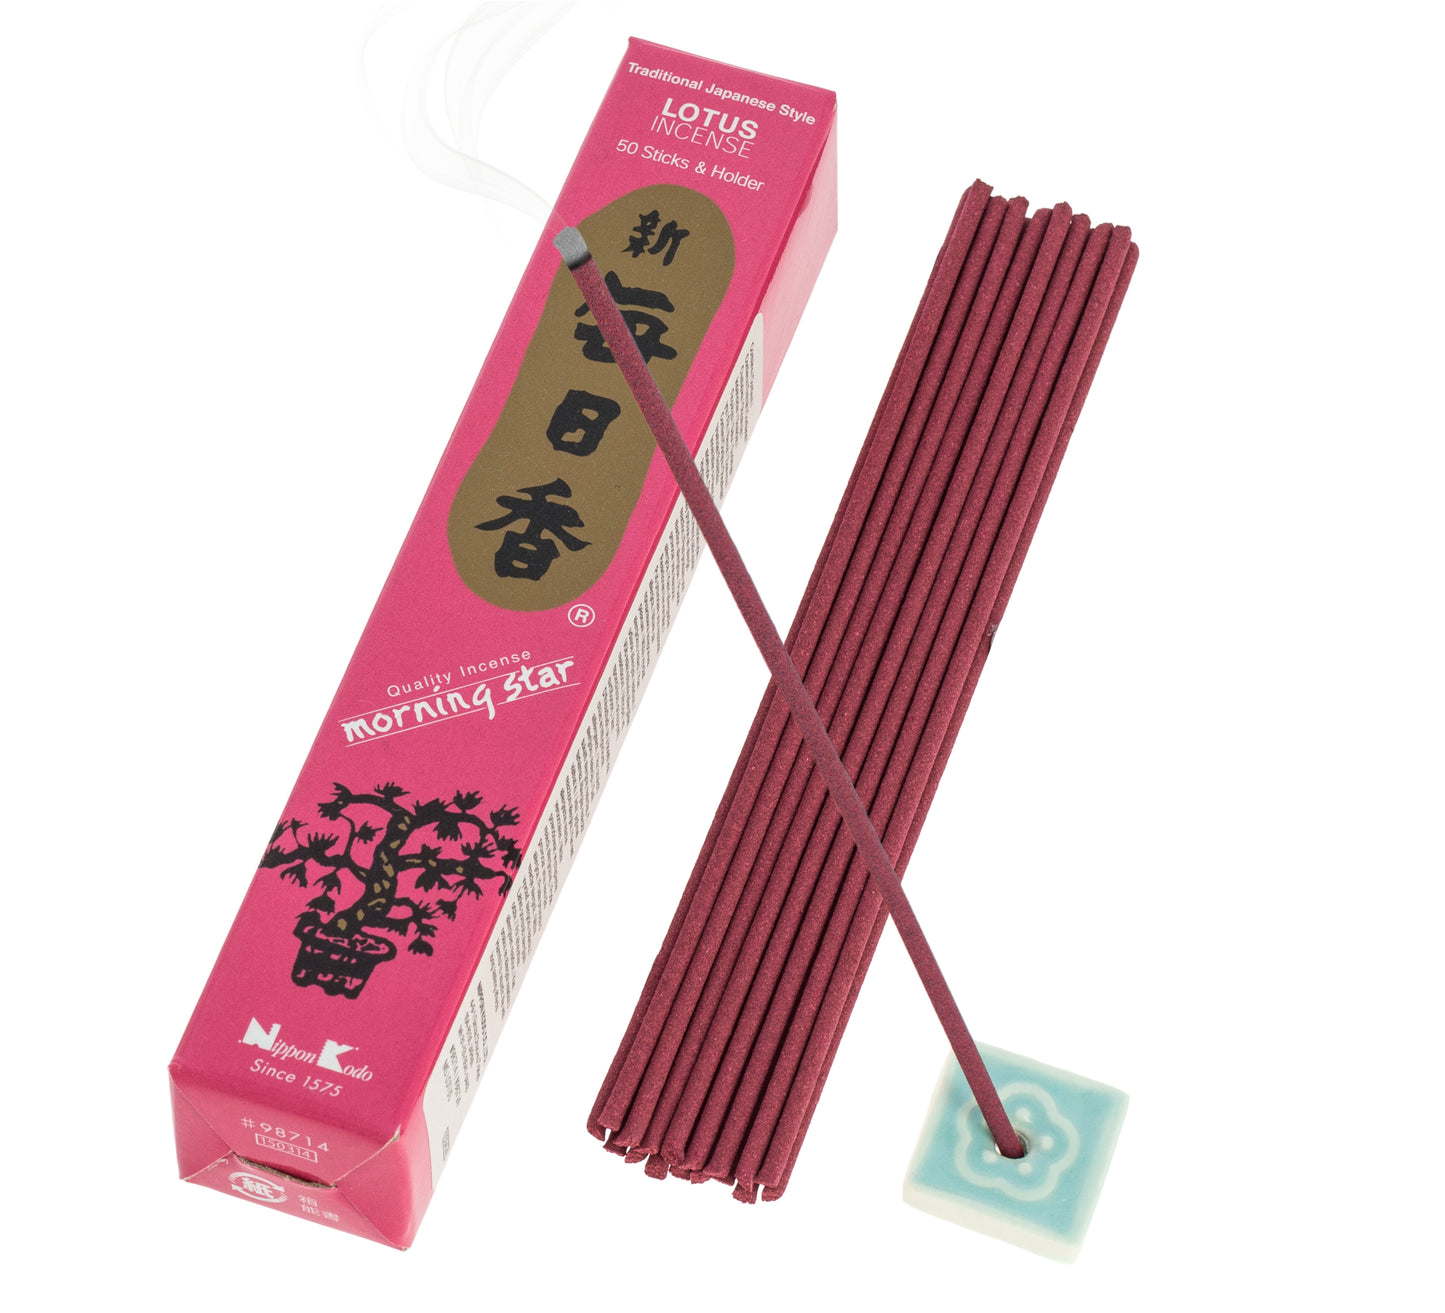 Morning Star Incense - Lotus, 50 Sticks